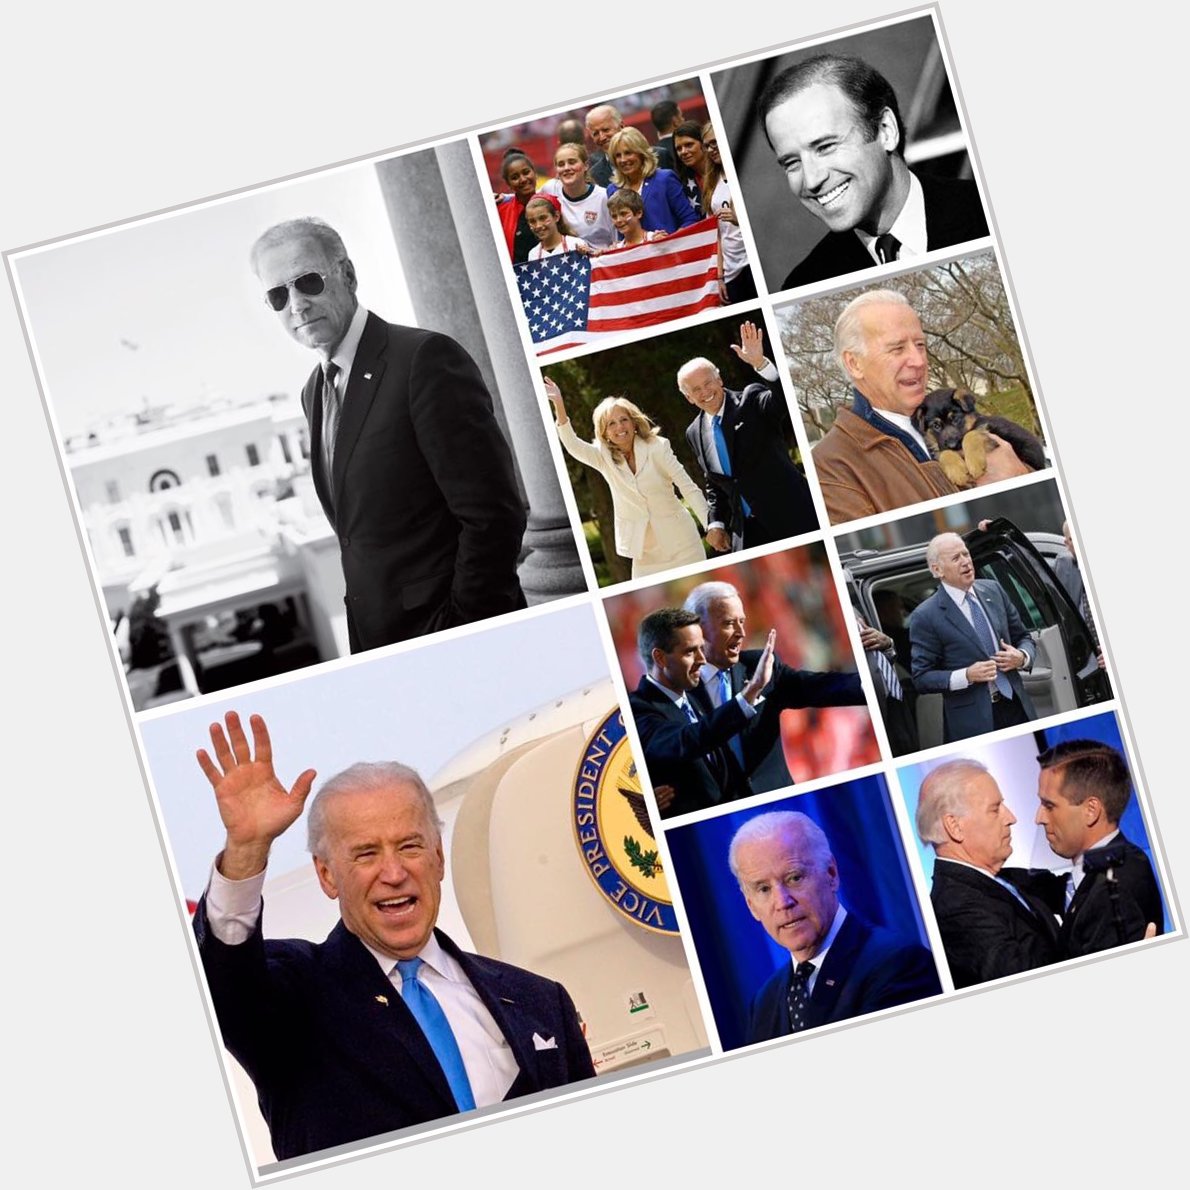 Today in History 
November 20th
Happy 76th Birthday Joe
1942 - Joe Biden is born in Pennsylvania.  